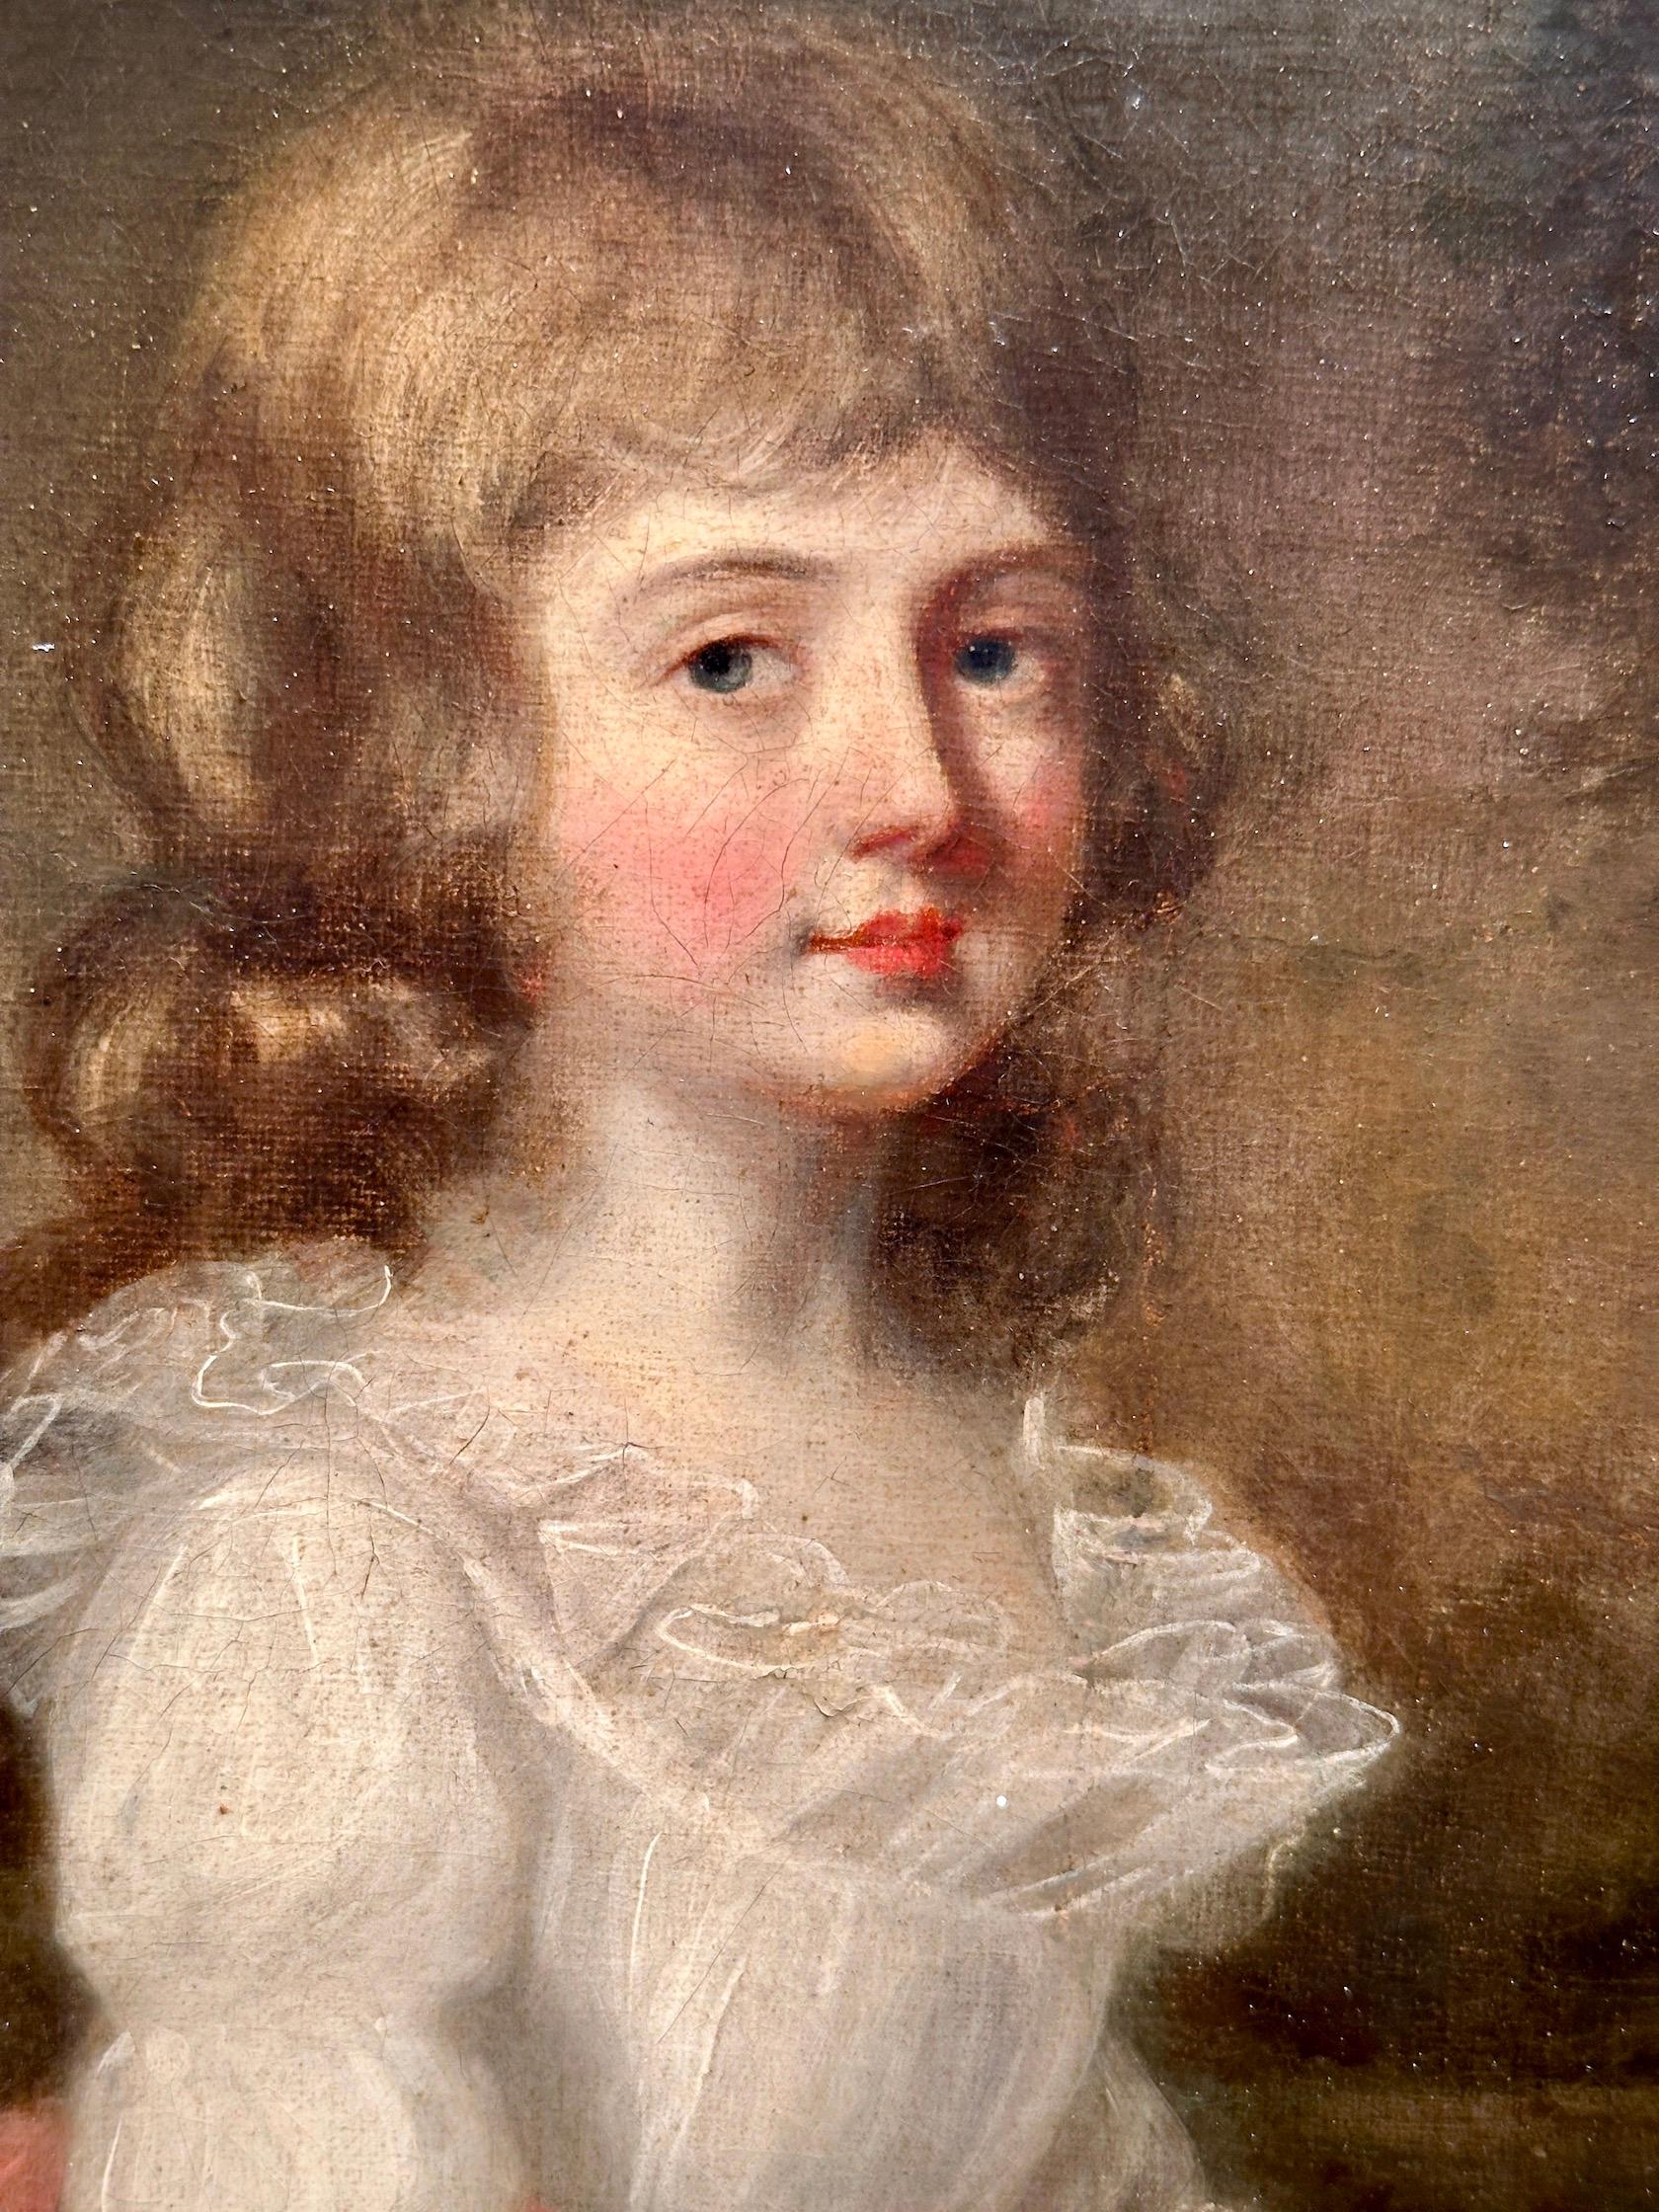 Portrait d'une jeune fille britannique, dans sa robe blanche avec une ceinture rose.

Choisir d'acquérir un portrait de jeune fille du XVIIIe siècle réalisé par l'artiste anglais John Russell, c'est l'occasion de posséder une pièce captivante de